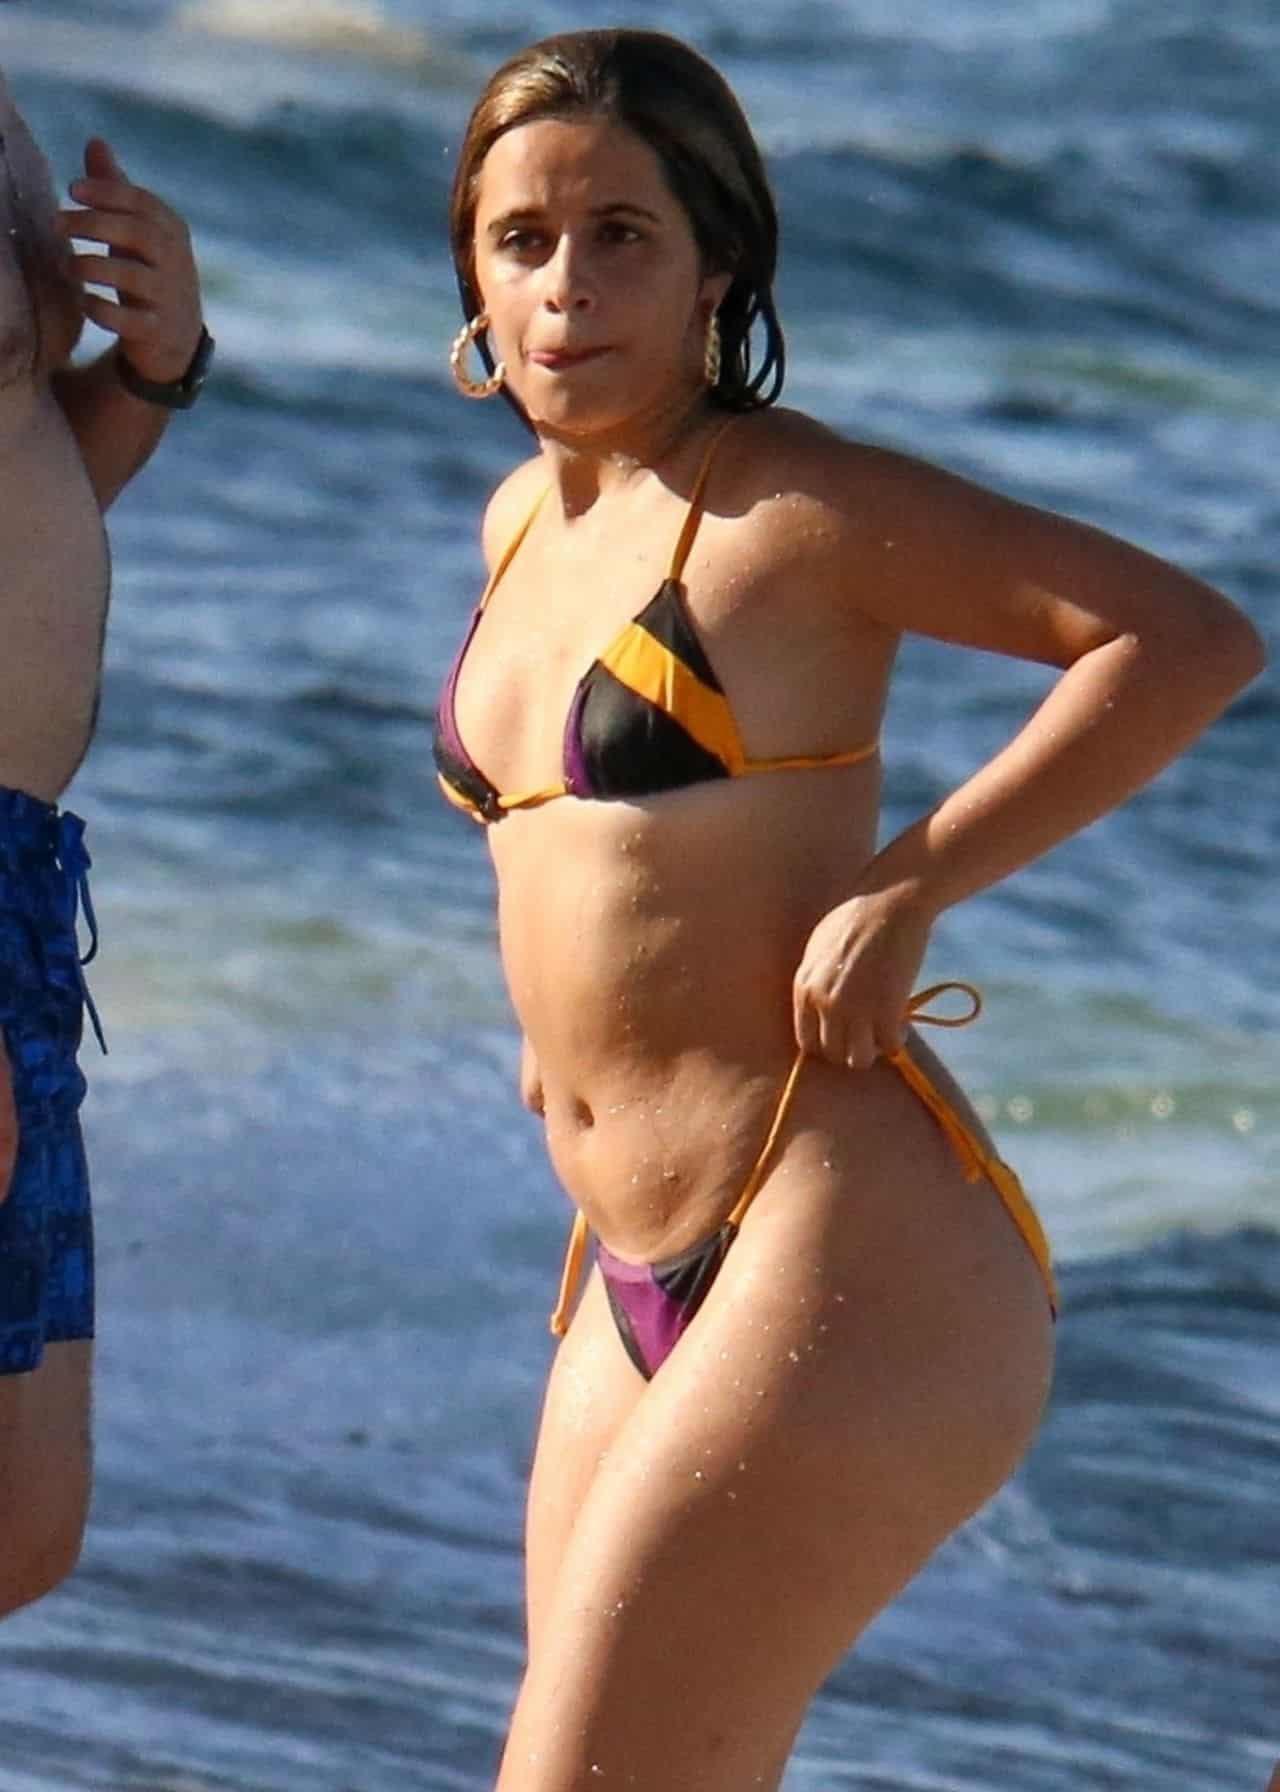 Camila Cabello in a Colorful Chic Bikini on the Beach in Coral Gables